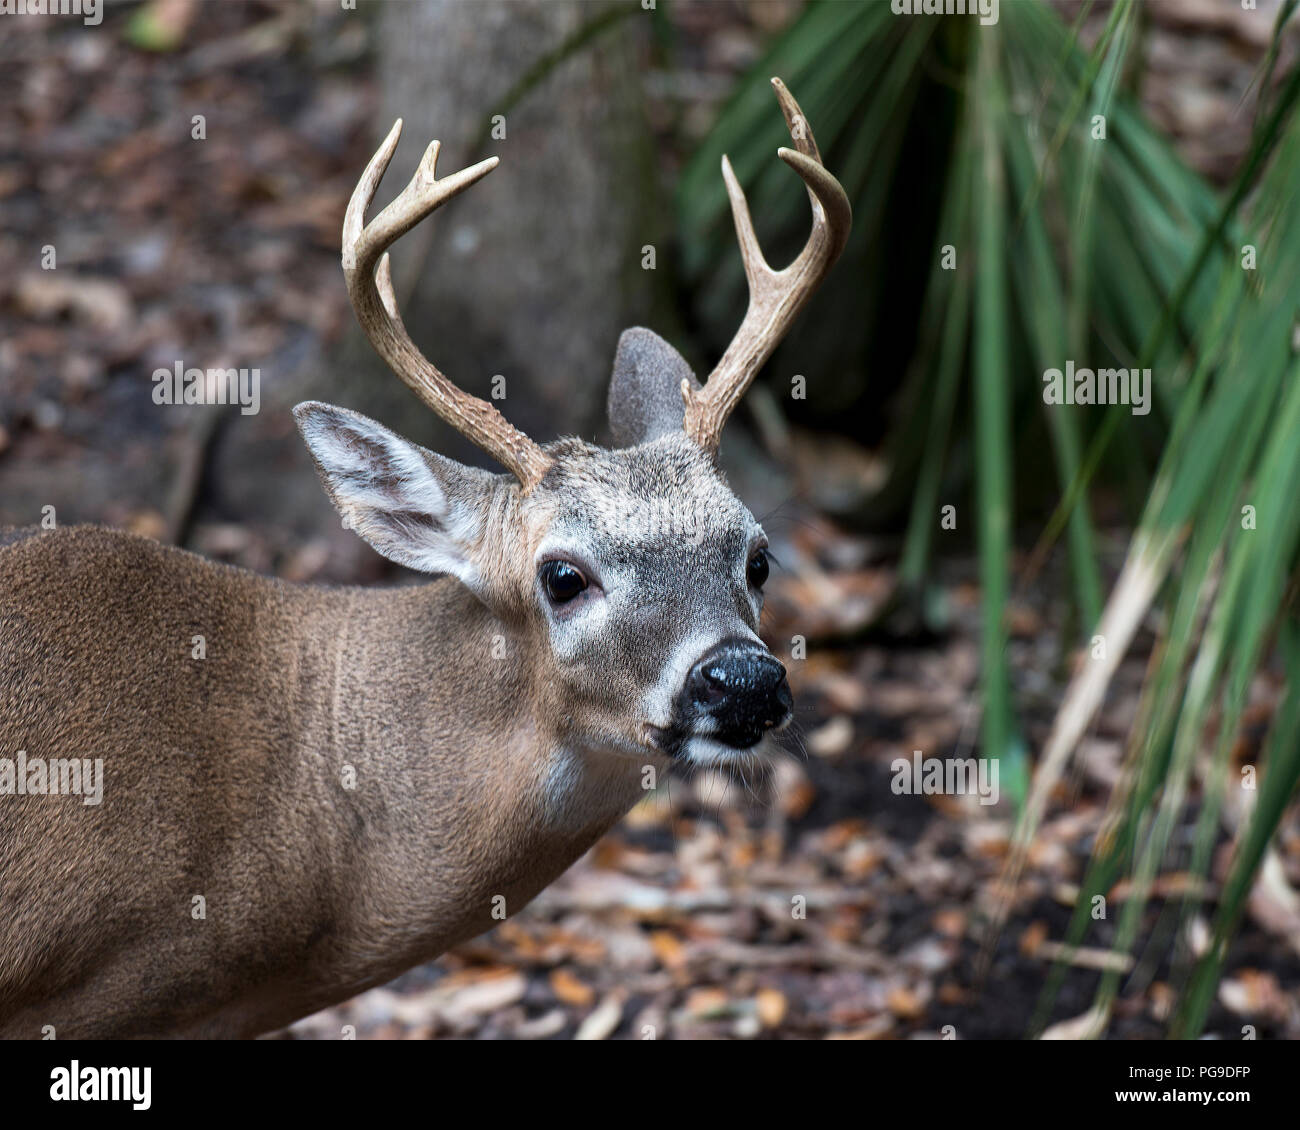 Rotwild Florida Key Deer Tier close-up Head View, Geweihe, Ohren, Augen, Nase, in seiner Umwelt und Umgebung, mit einem Bokeh Hintergrund. Bild Foto. Stockfoto